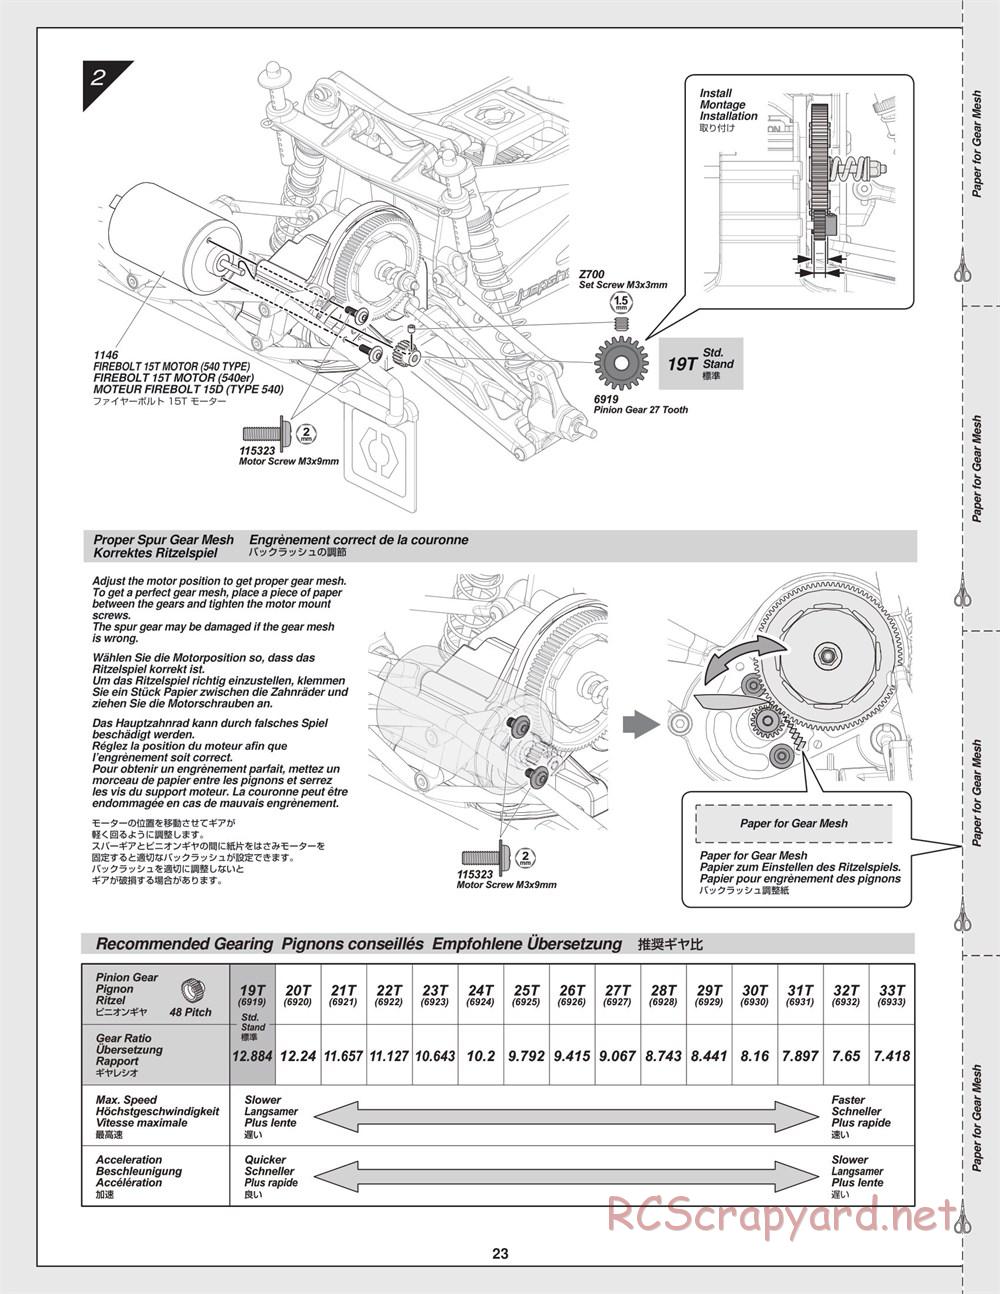 HPI - Jumpshot SC - Manual - Page 23